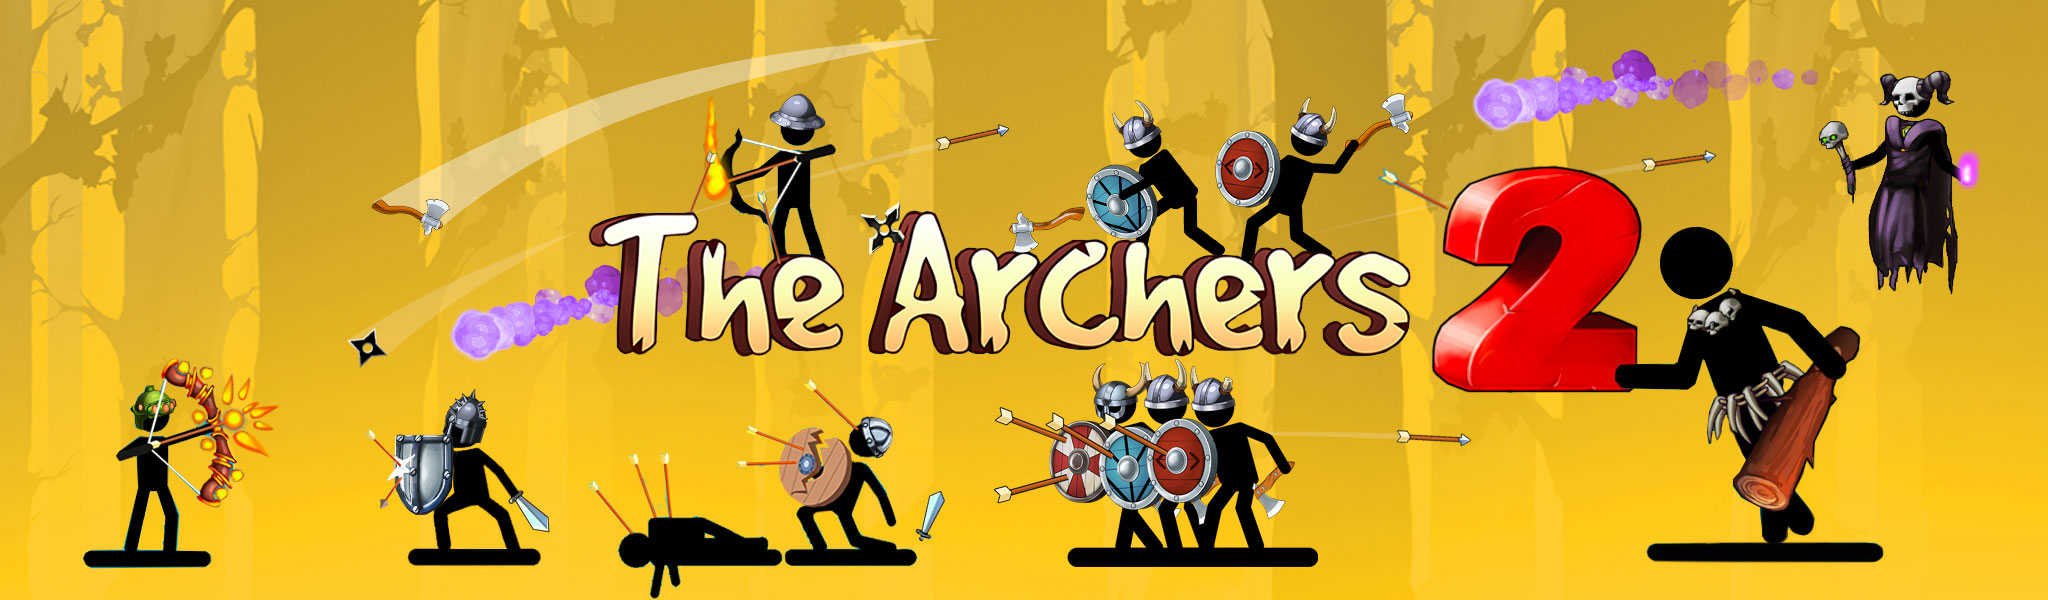 archer2